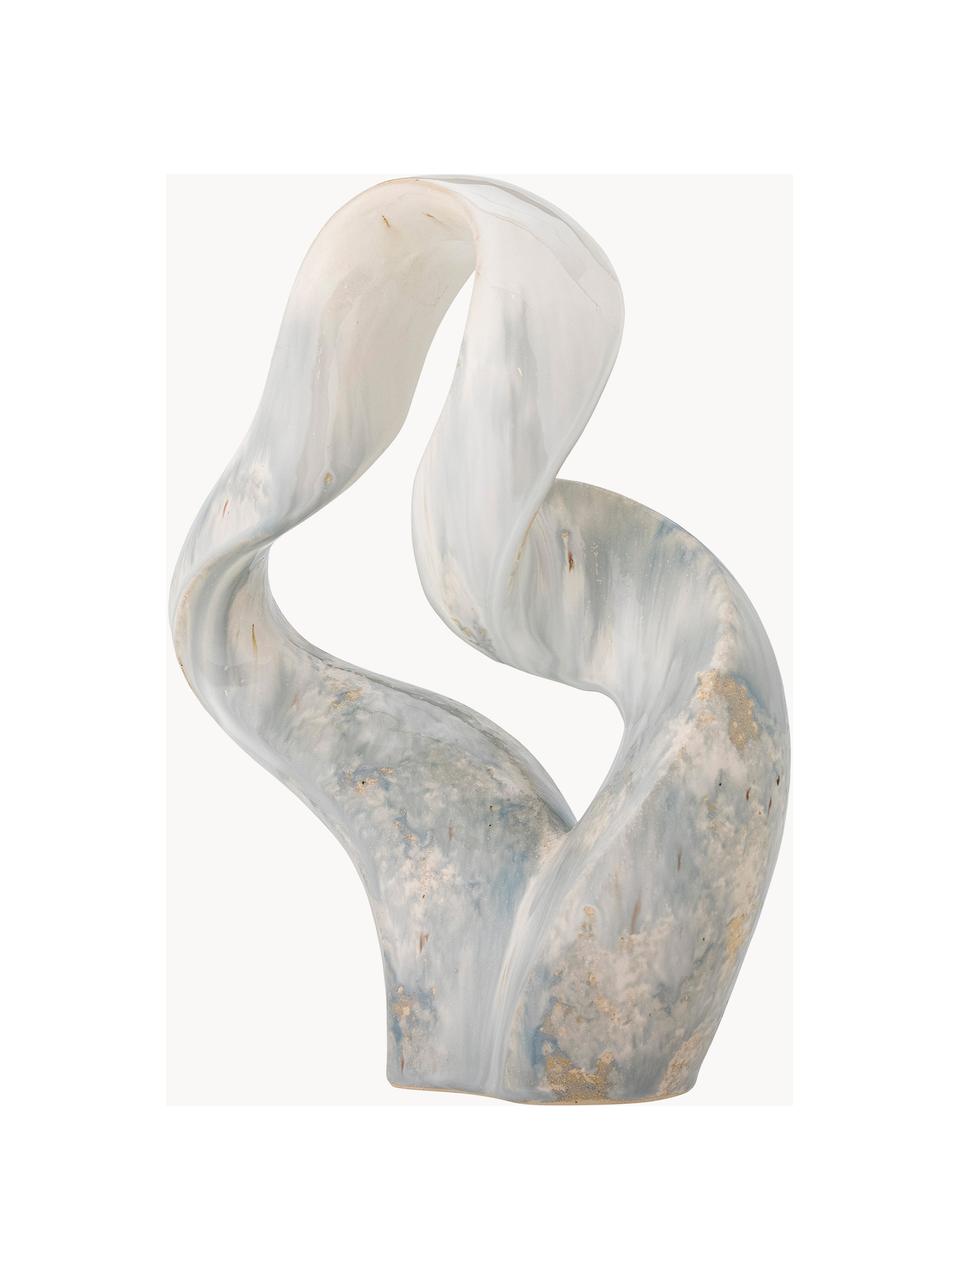 Dekorácia Rouyi, Kamenina, Lomená biela, svetlomodrá, Š 28 x V 35 cm